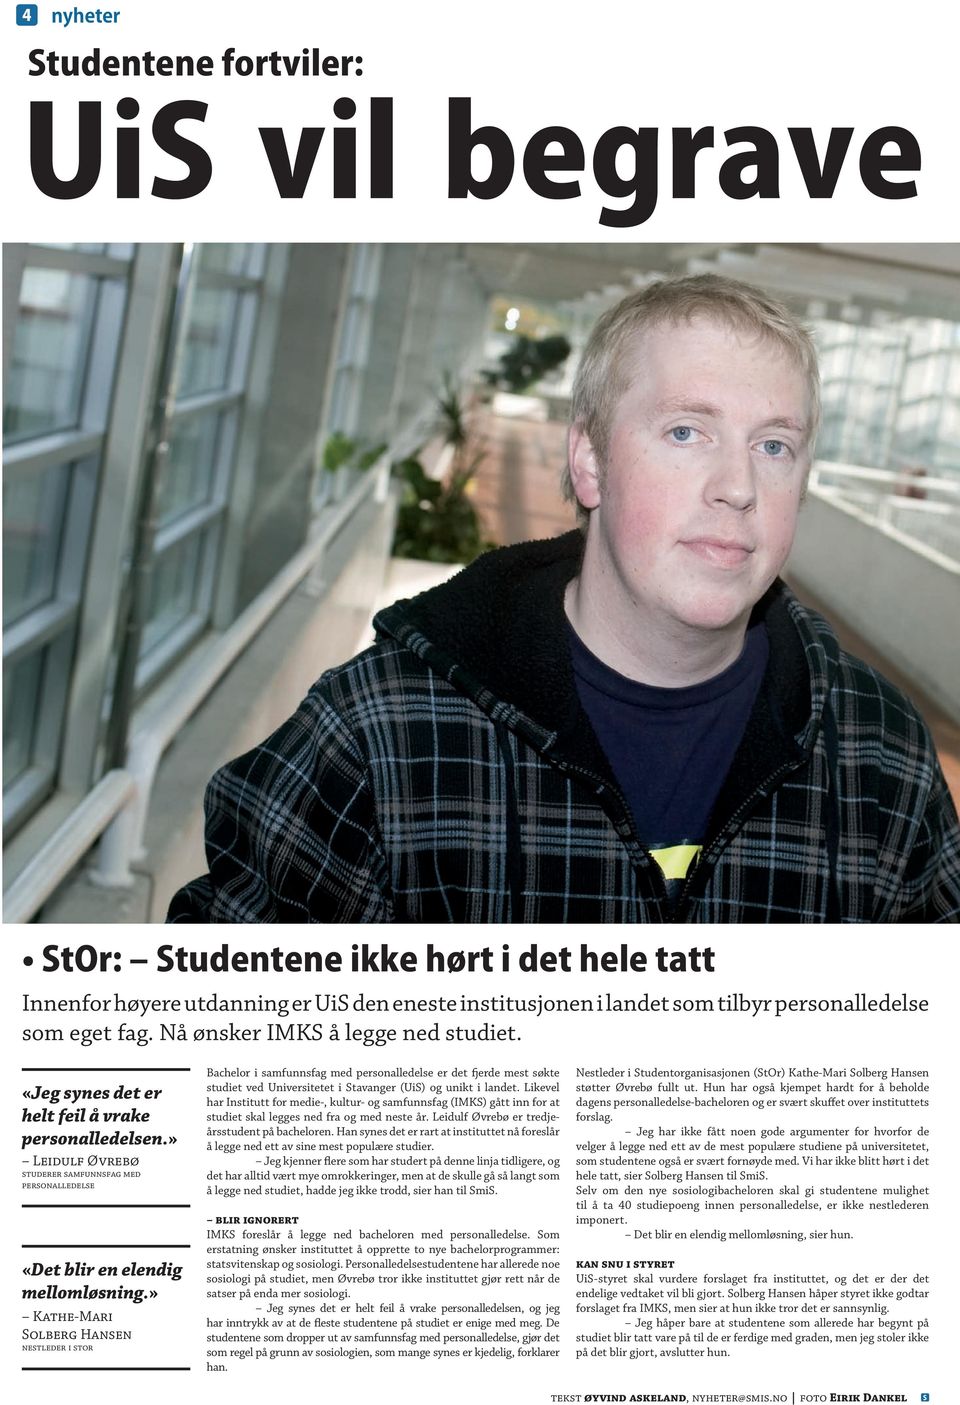 » Kathe-Mari olberg Hansen nestleder i stor Bachelor i samfunnsfag med personalledelse er det fjerde mest søkte studiet ved Universitetet i tavanger (Ui) og unikt i landet.